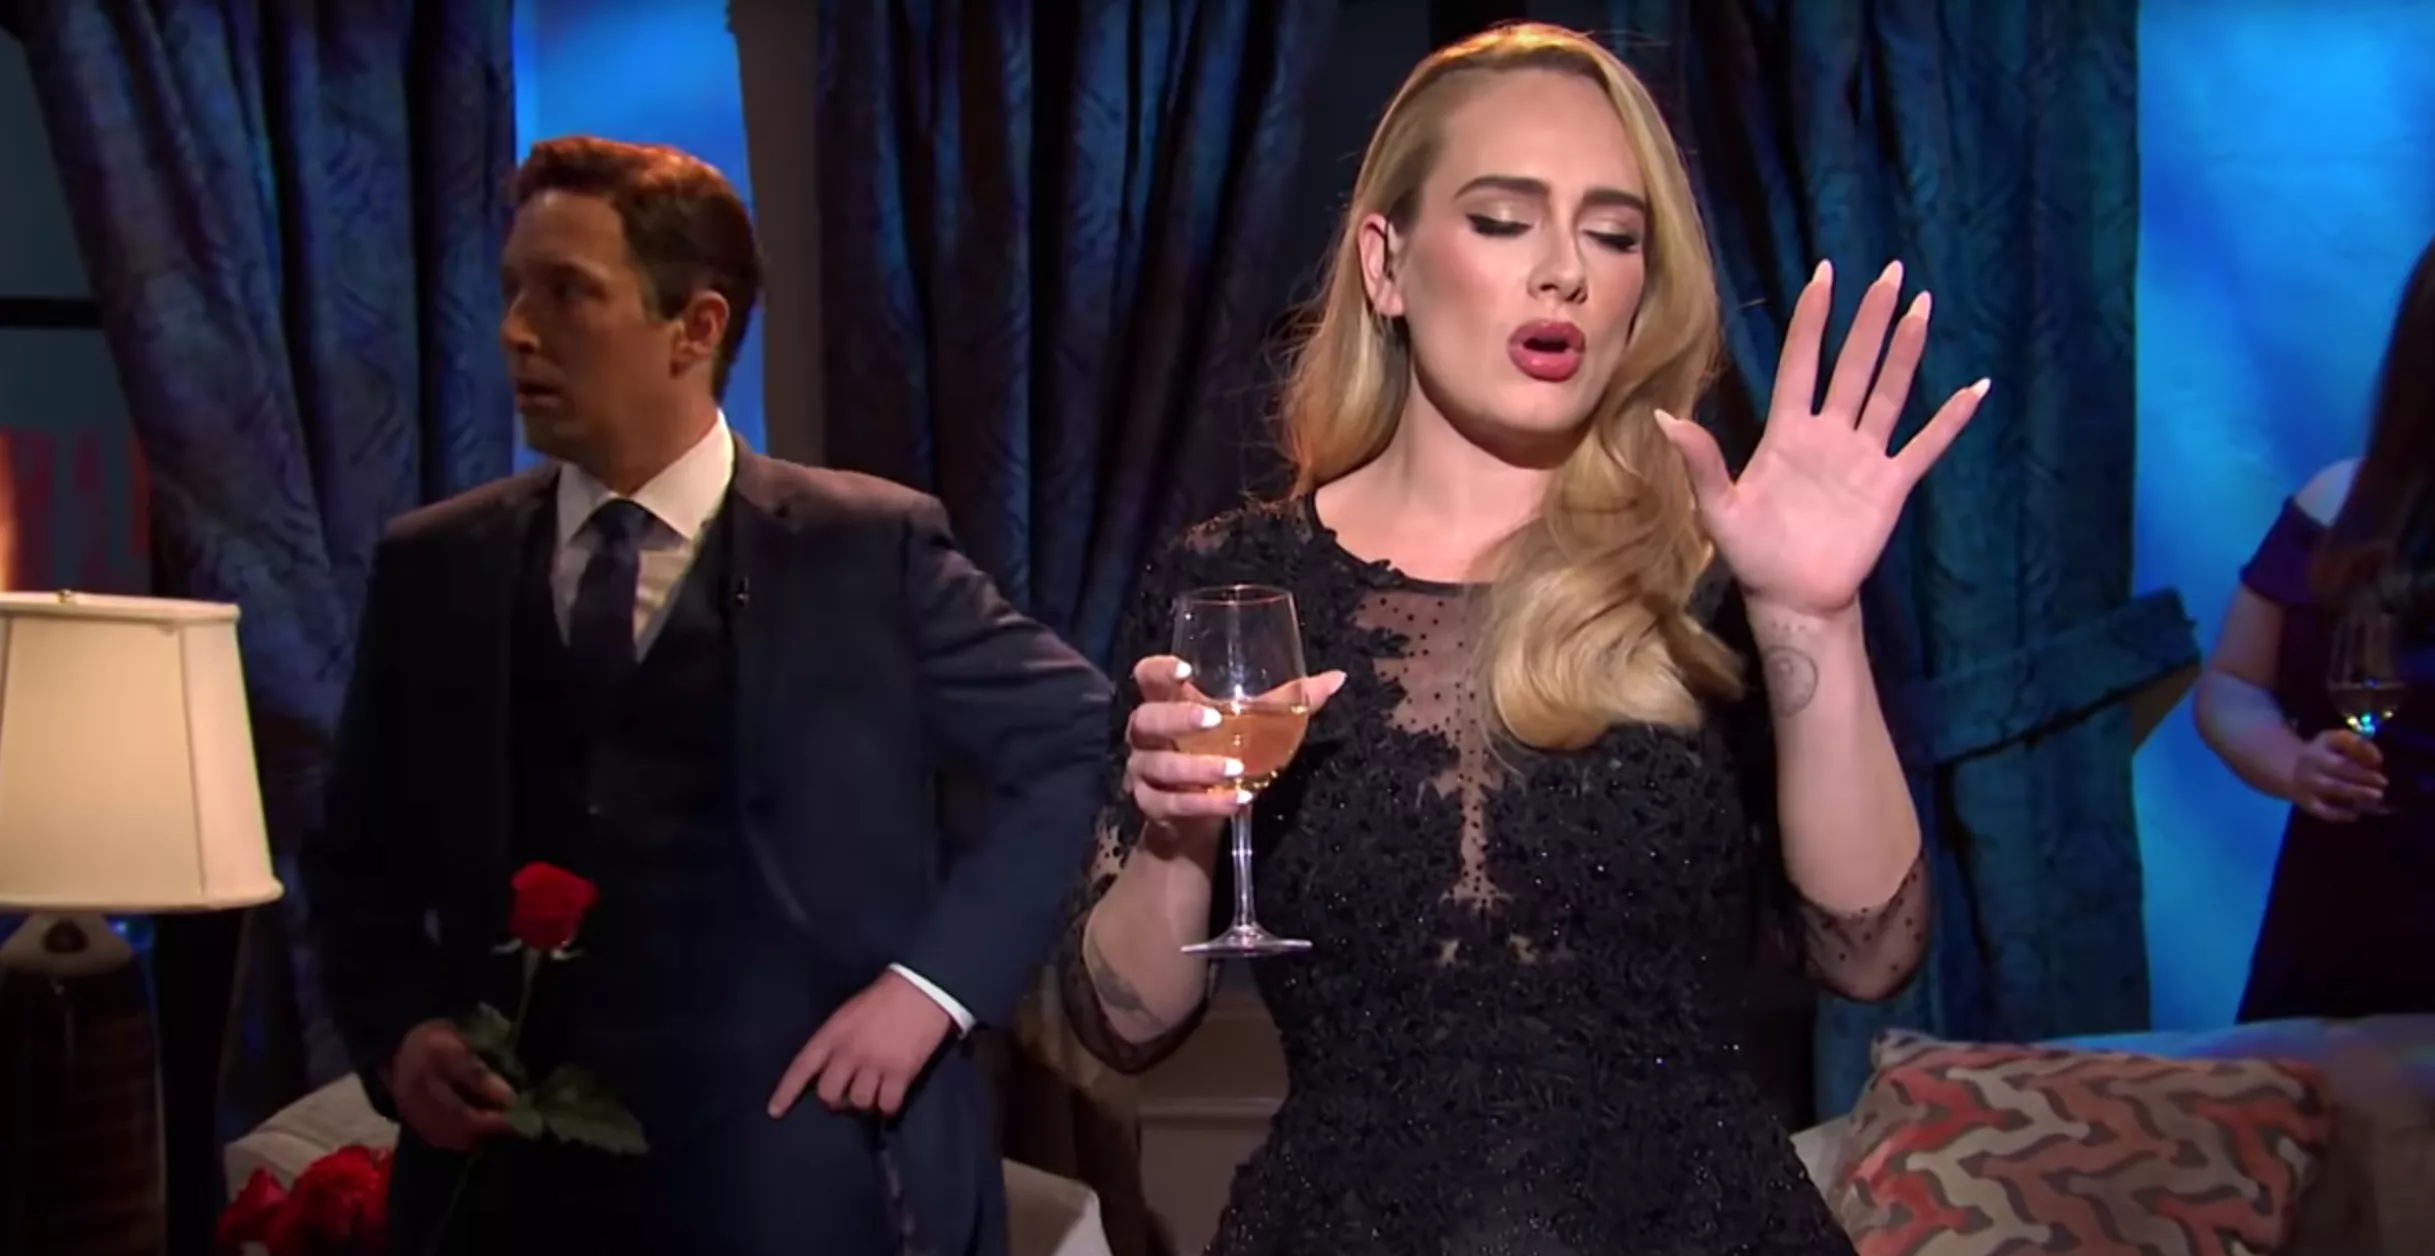 Se Adele bryde ud i sang i parodi på dating-show